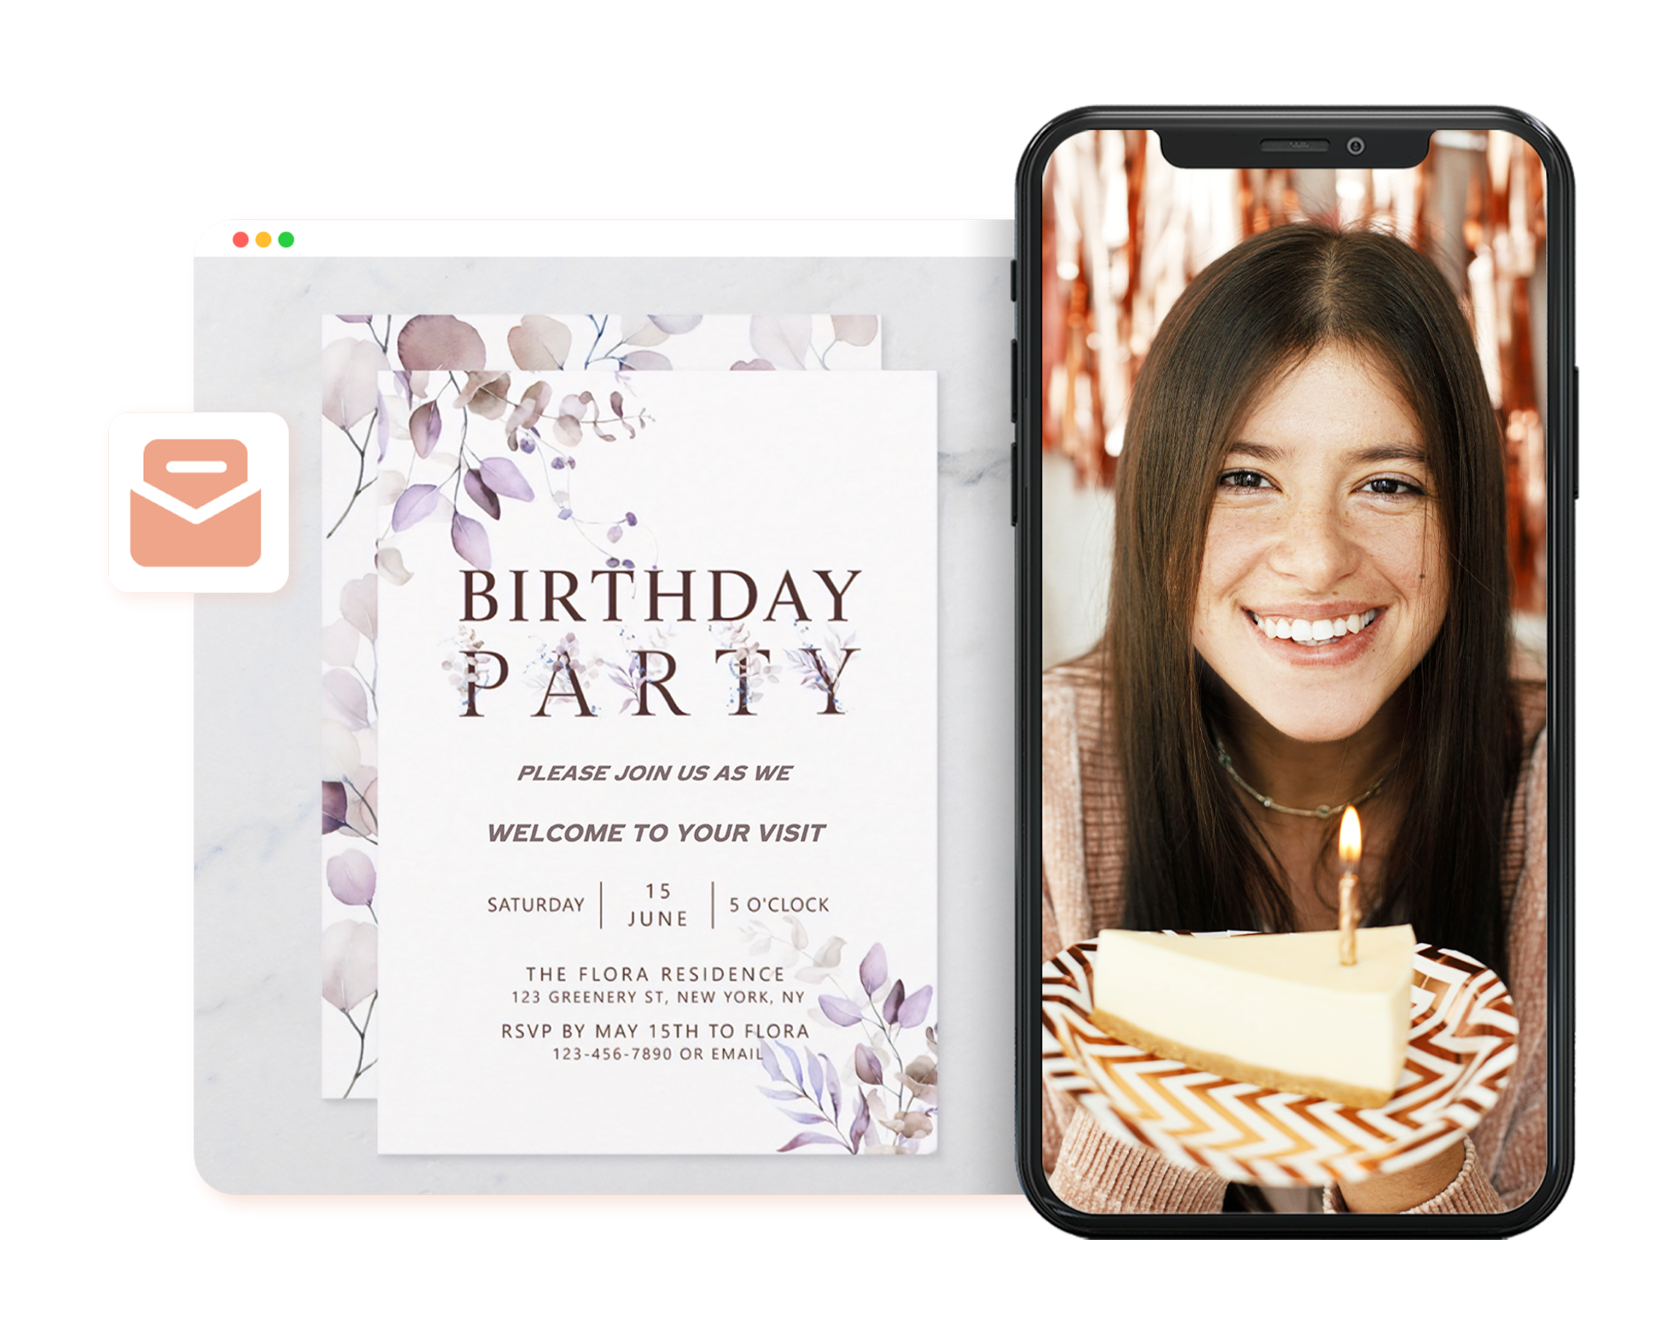 Erstellen Sie personalisierte Einladungen zu Geburtstagsfeiern